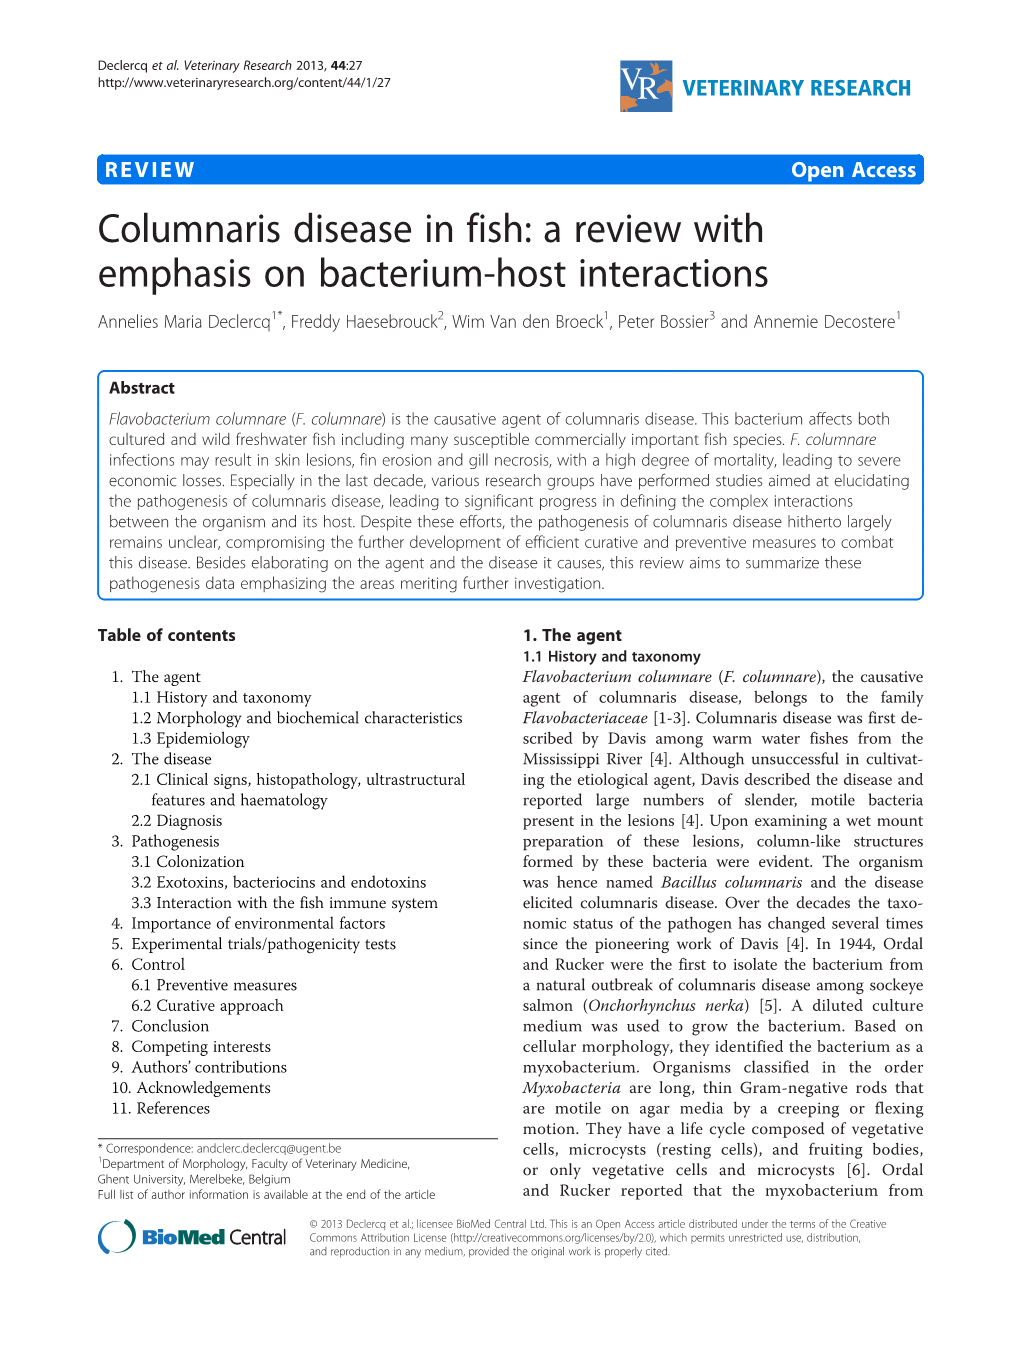 Columnaris Disease in Fish